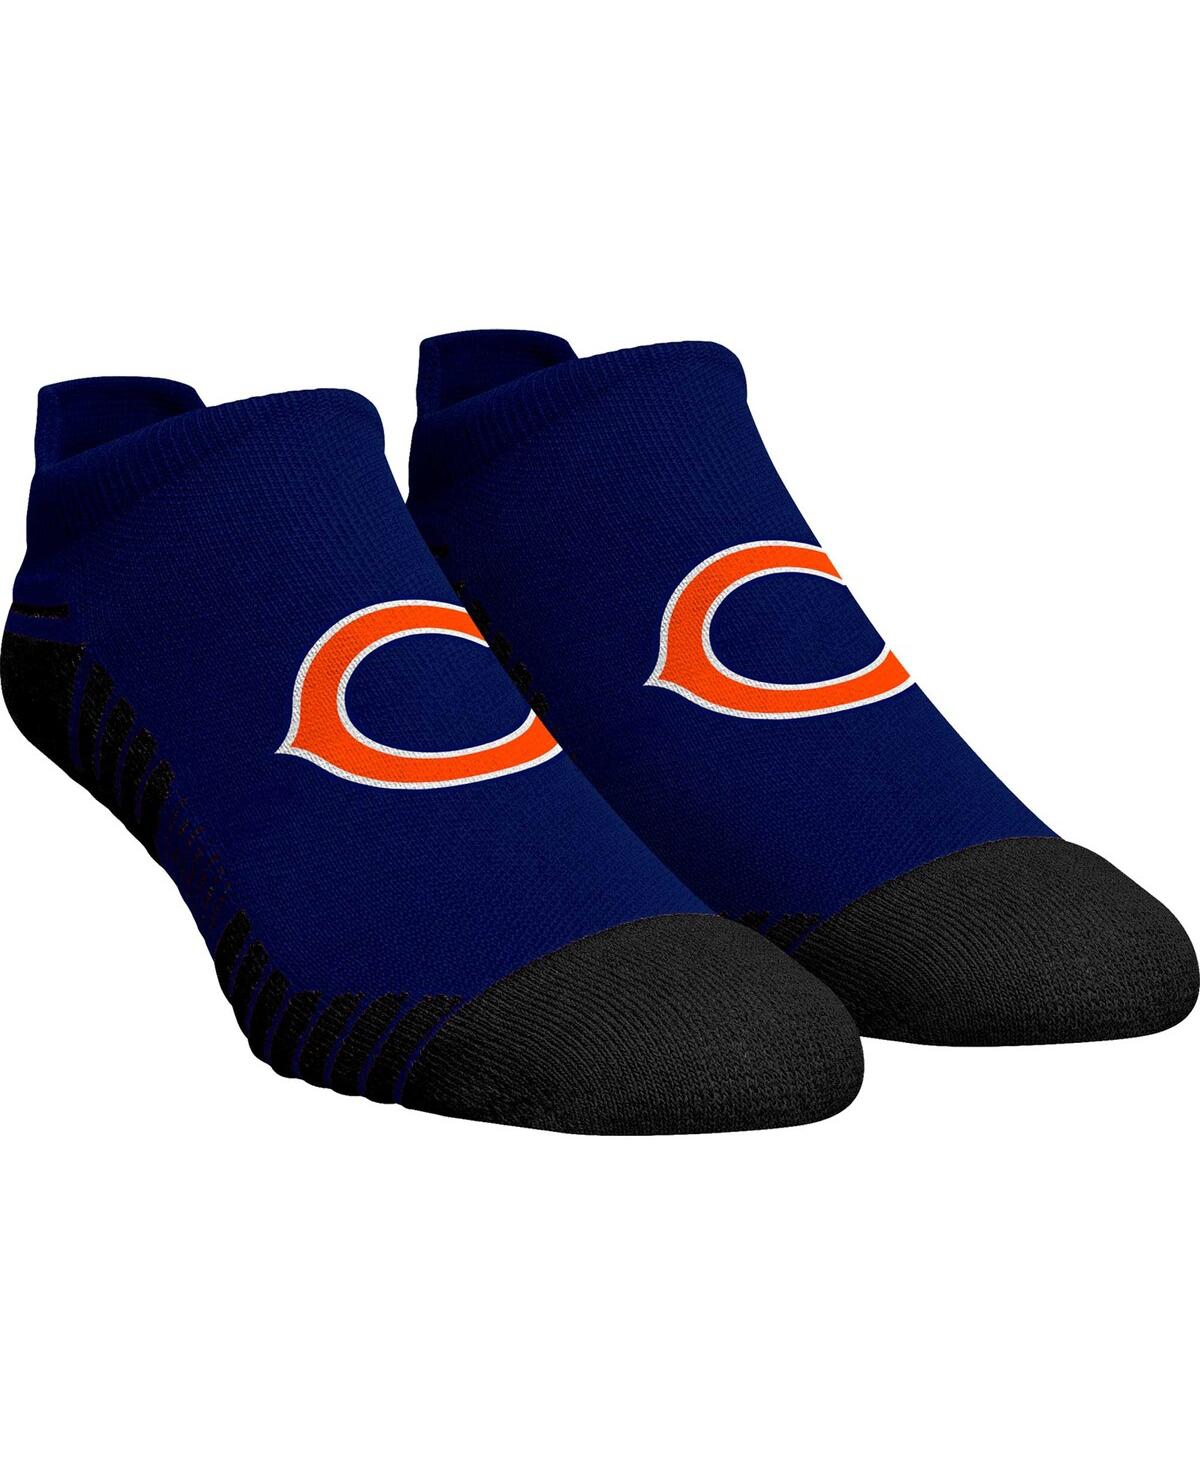 Men's and Women's Rock 'Em Socks Chicago Bears Hex Ankle Socks - Navy